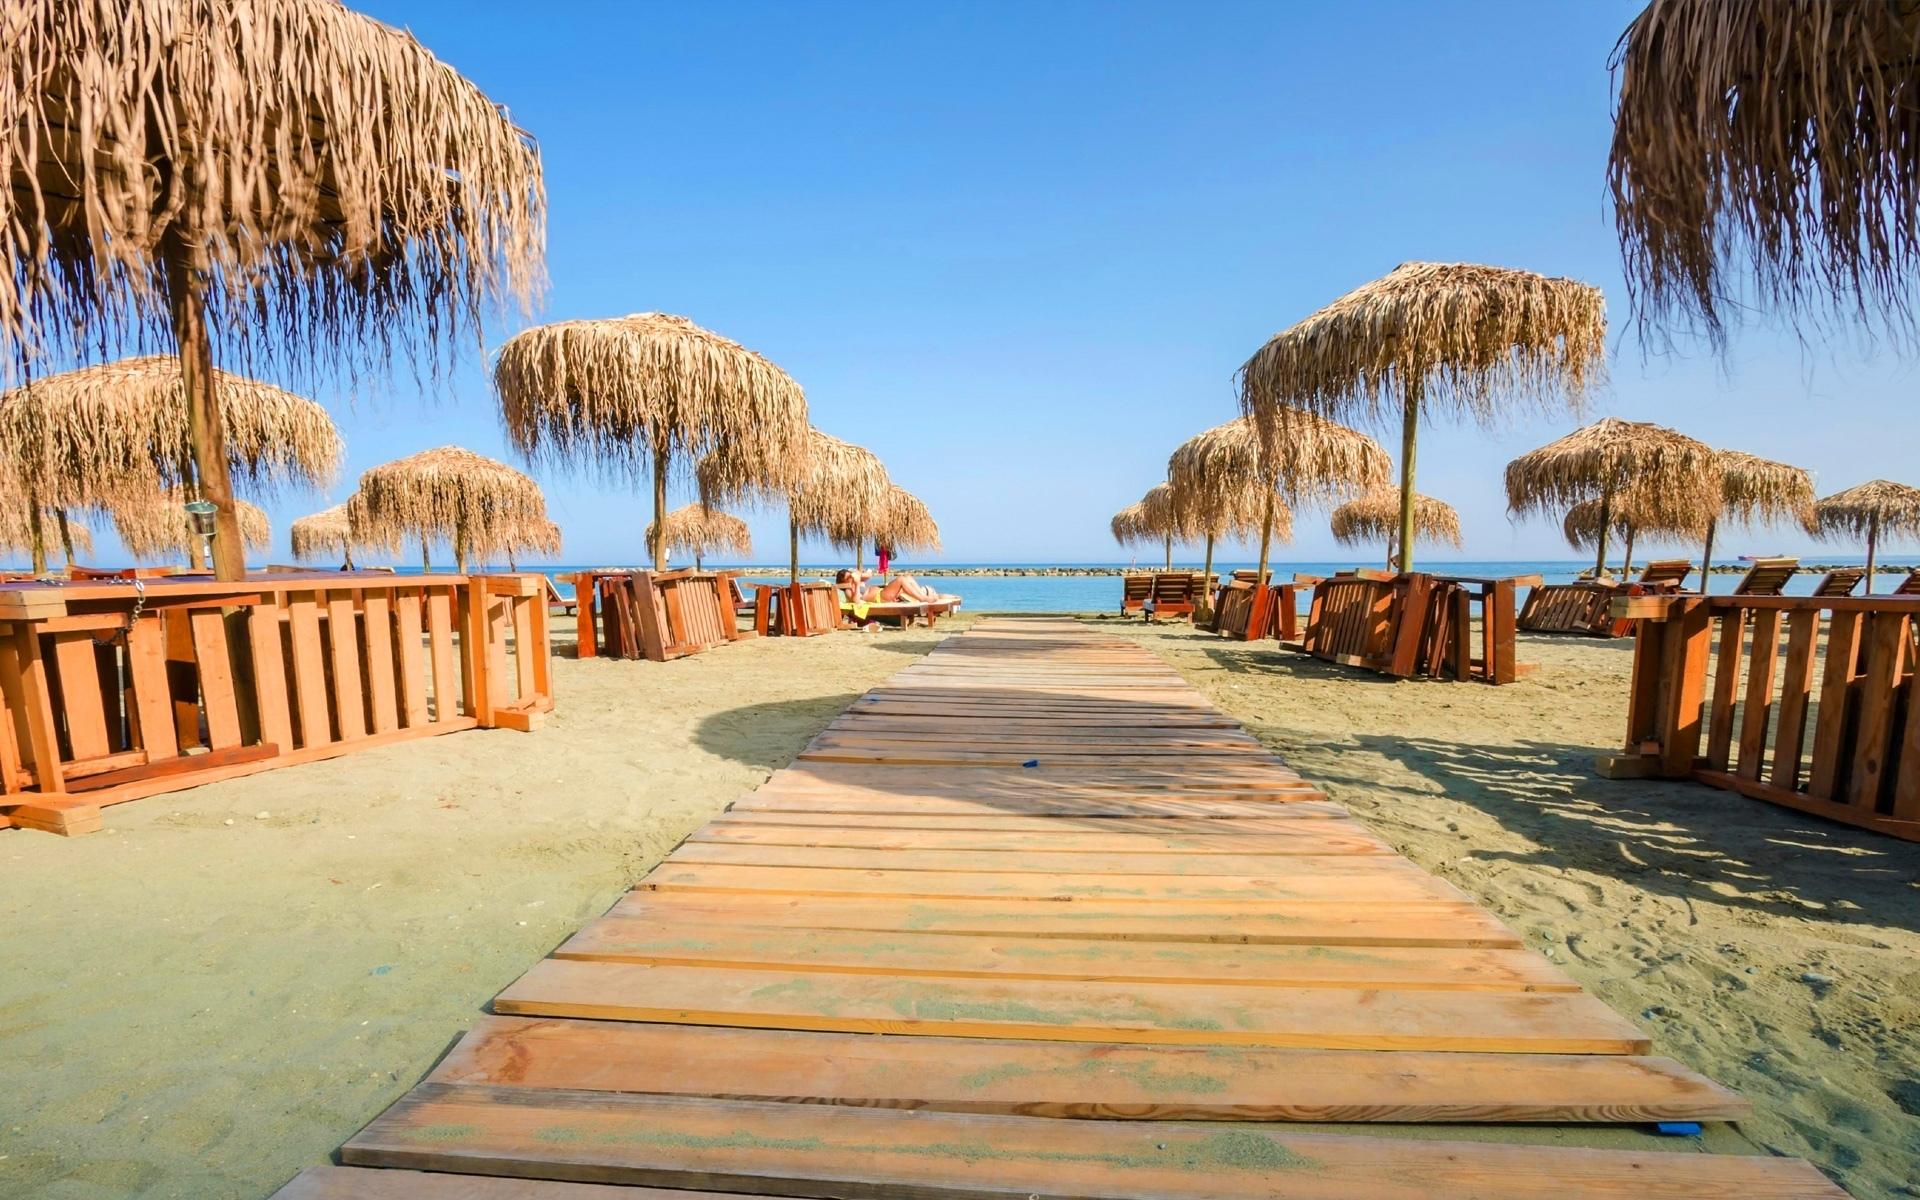 Castella Beach in Cyprus